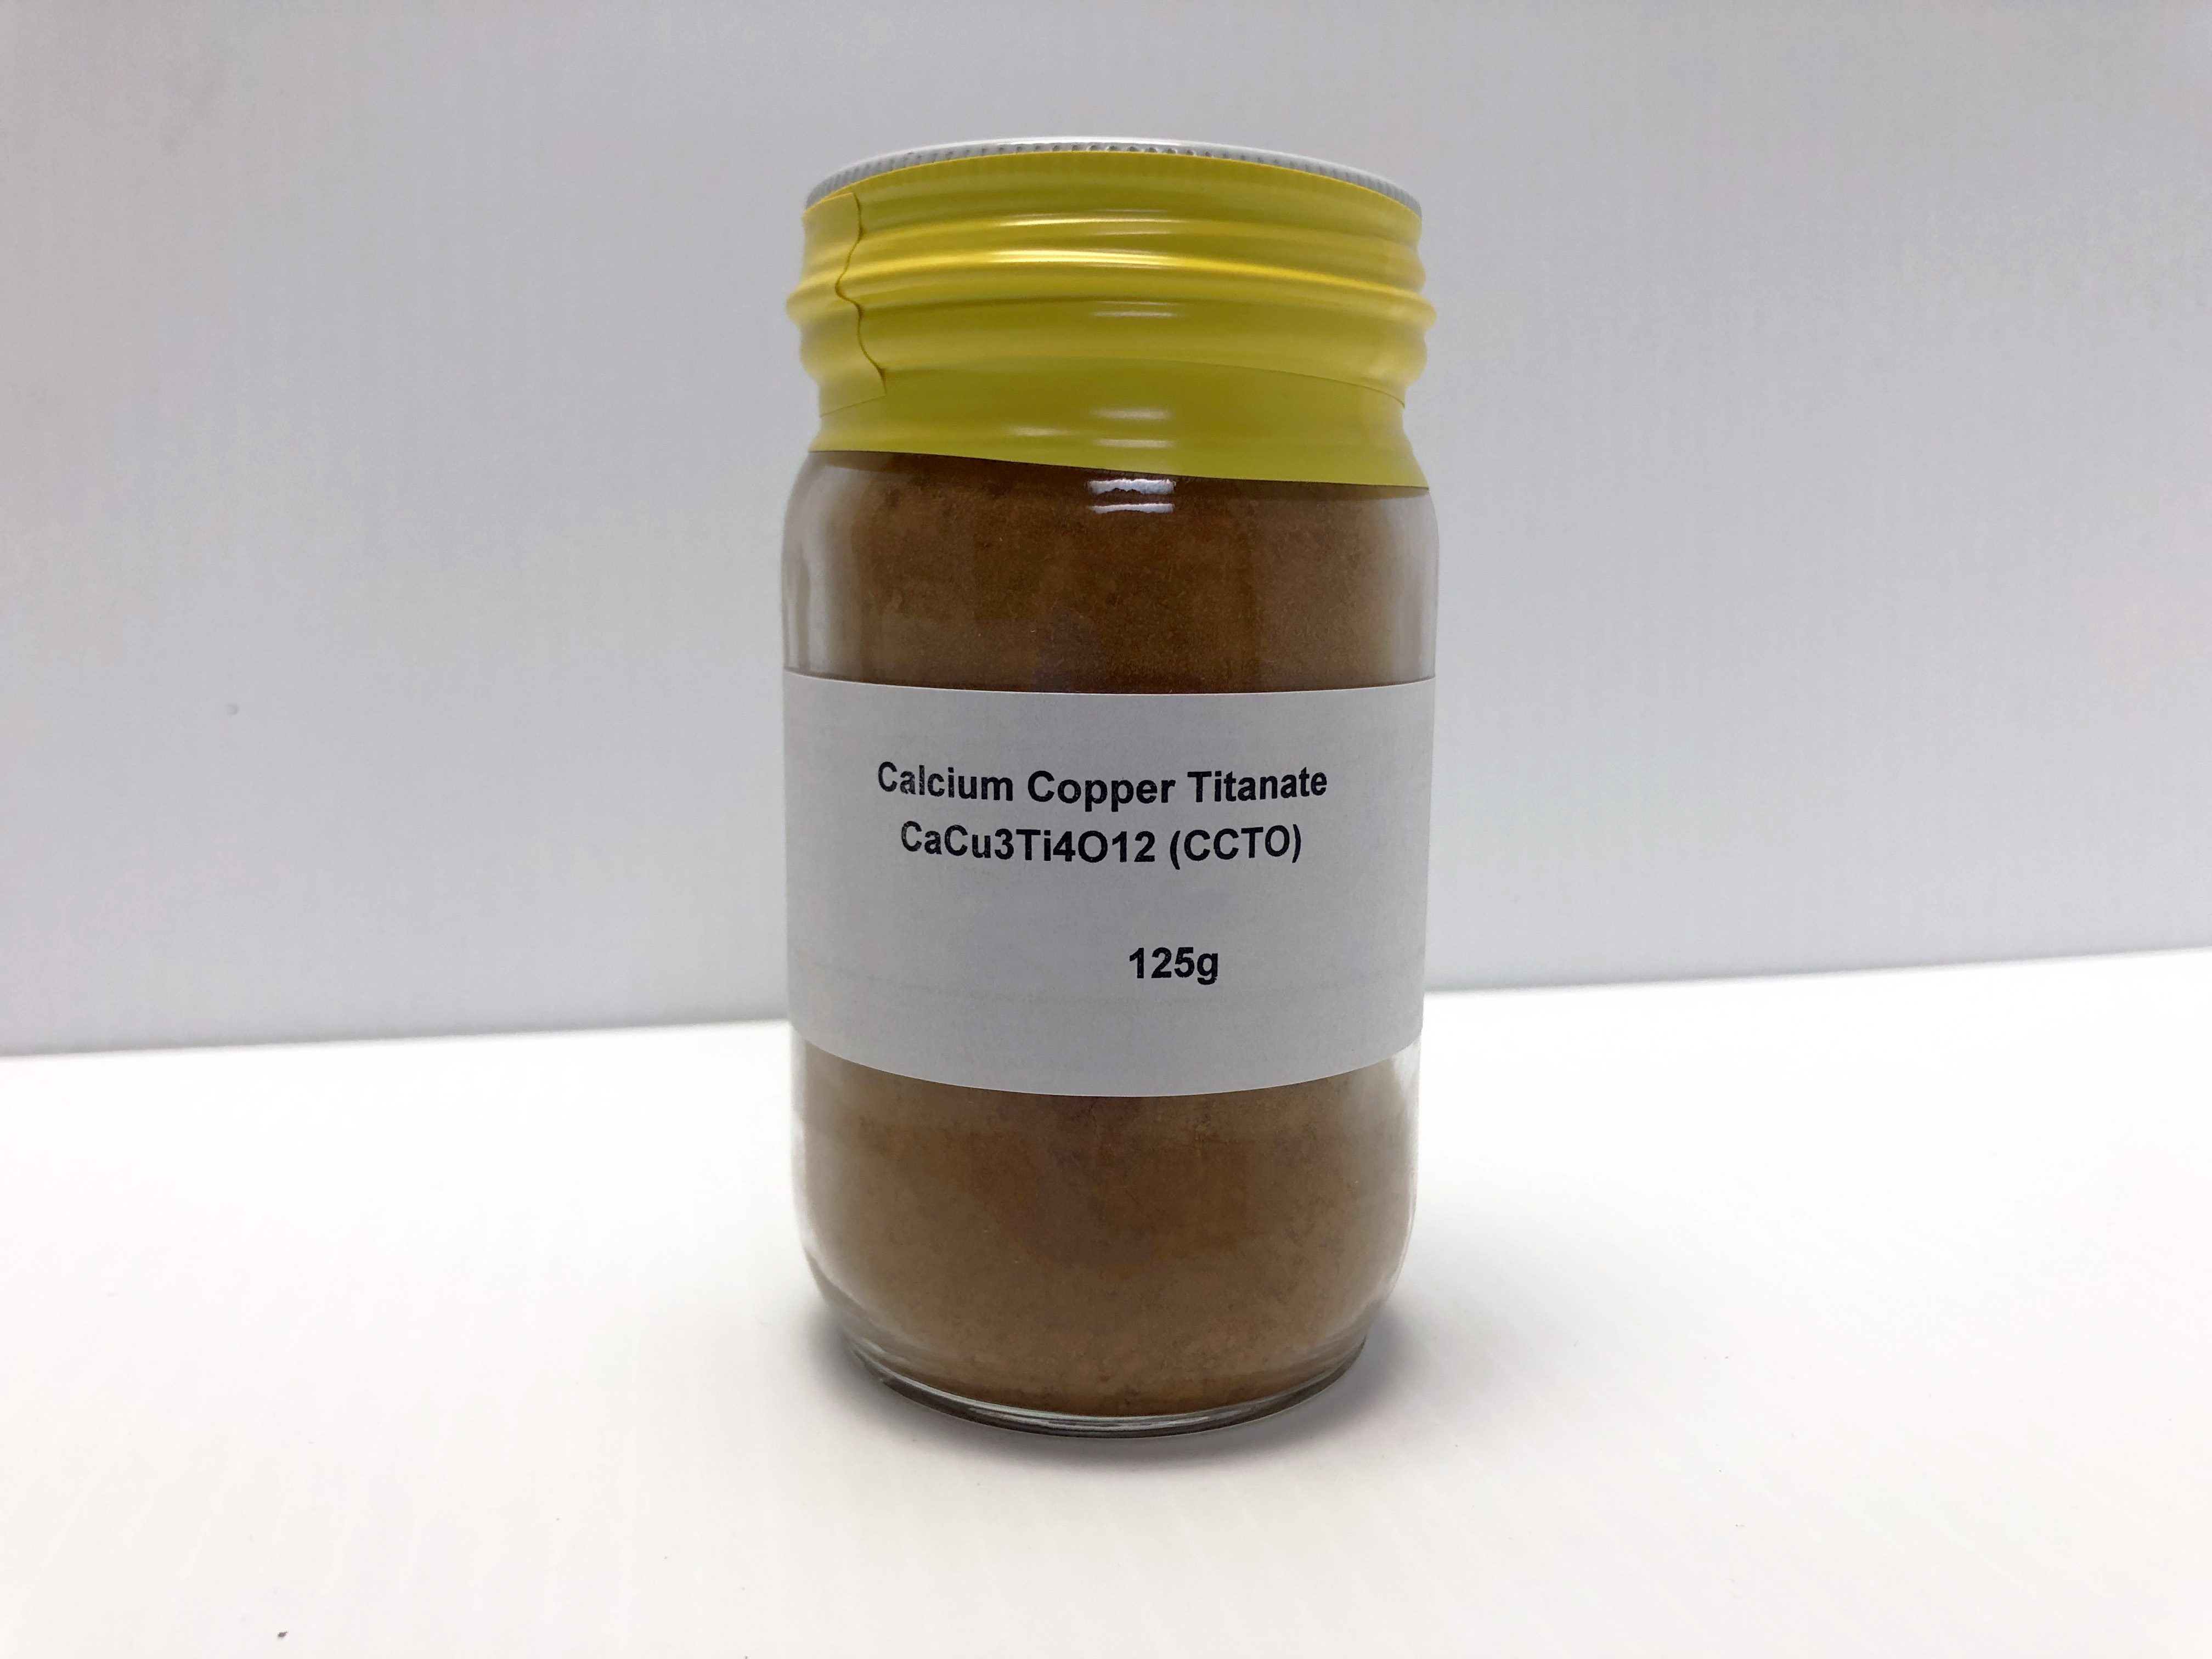 125g of Calcium Copper Titanium Oxide